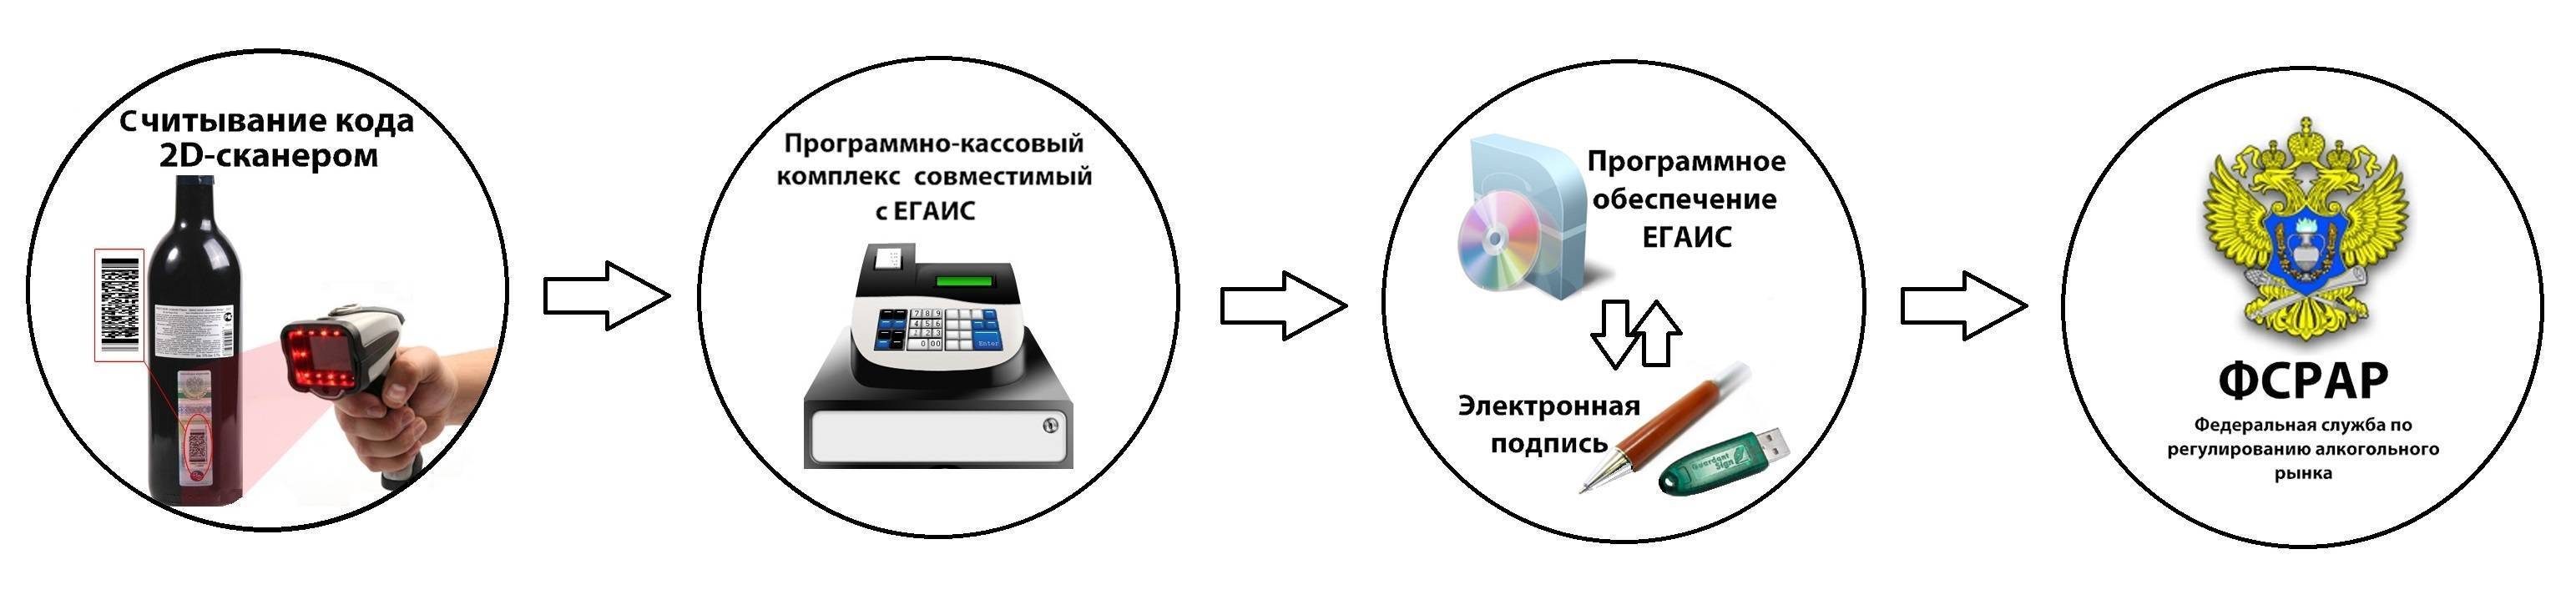 Что такое программа егаис, как работает, особенности :: businessman.ru